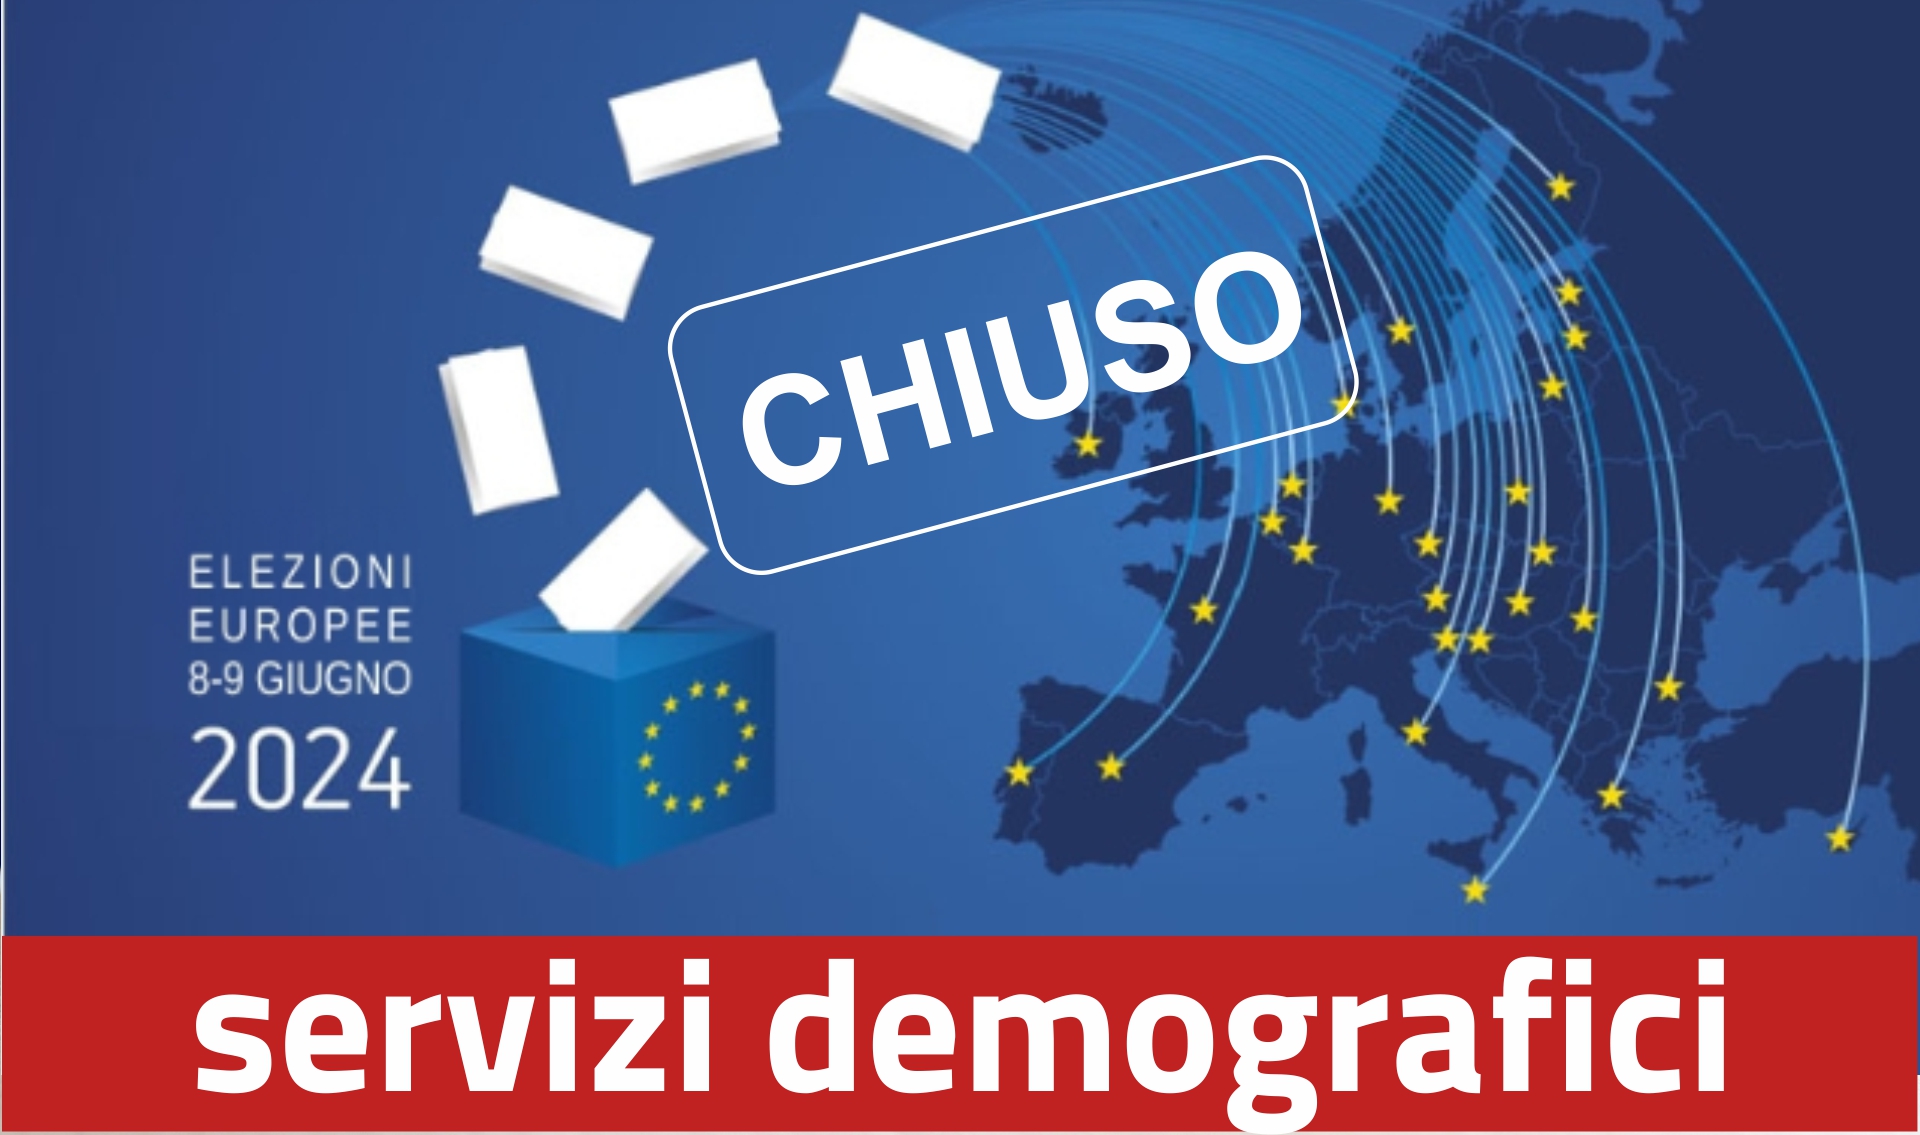 Elezioni Europee 8-9 giugno 2024: Chiusura ufficio servizi demografici